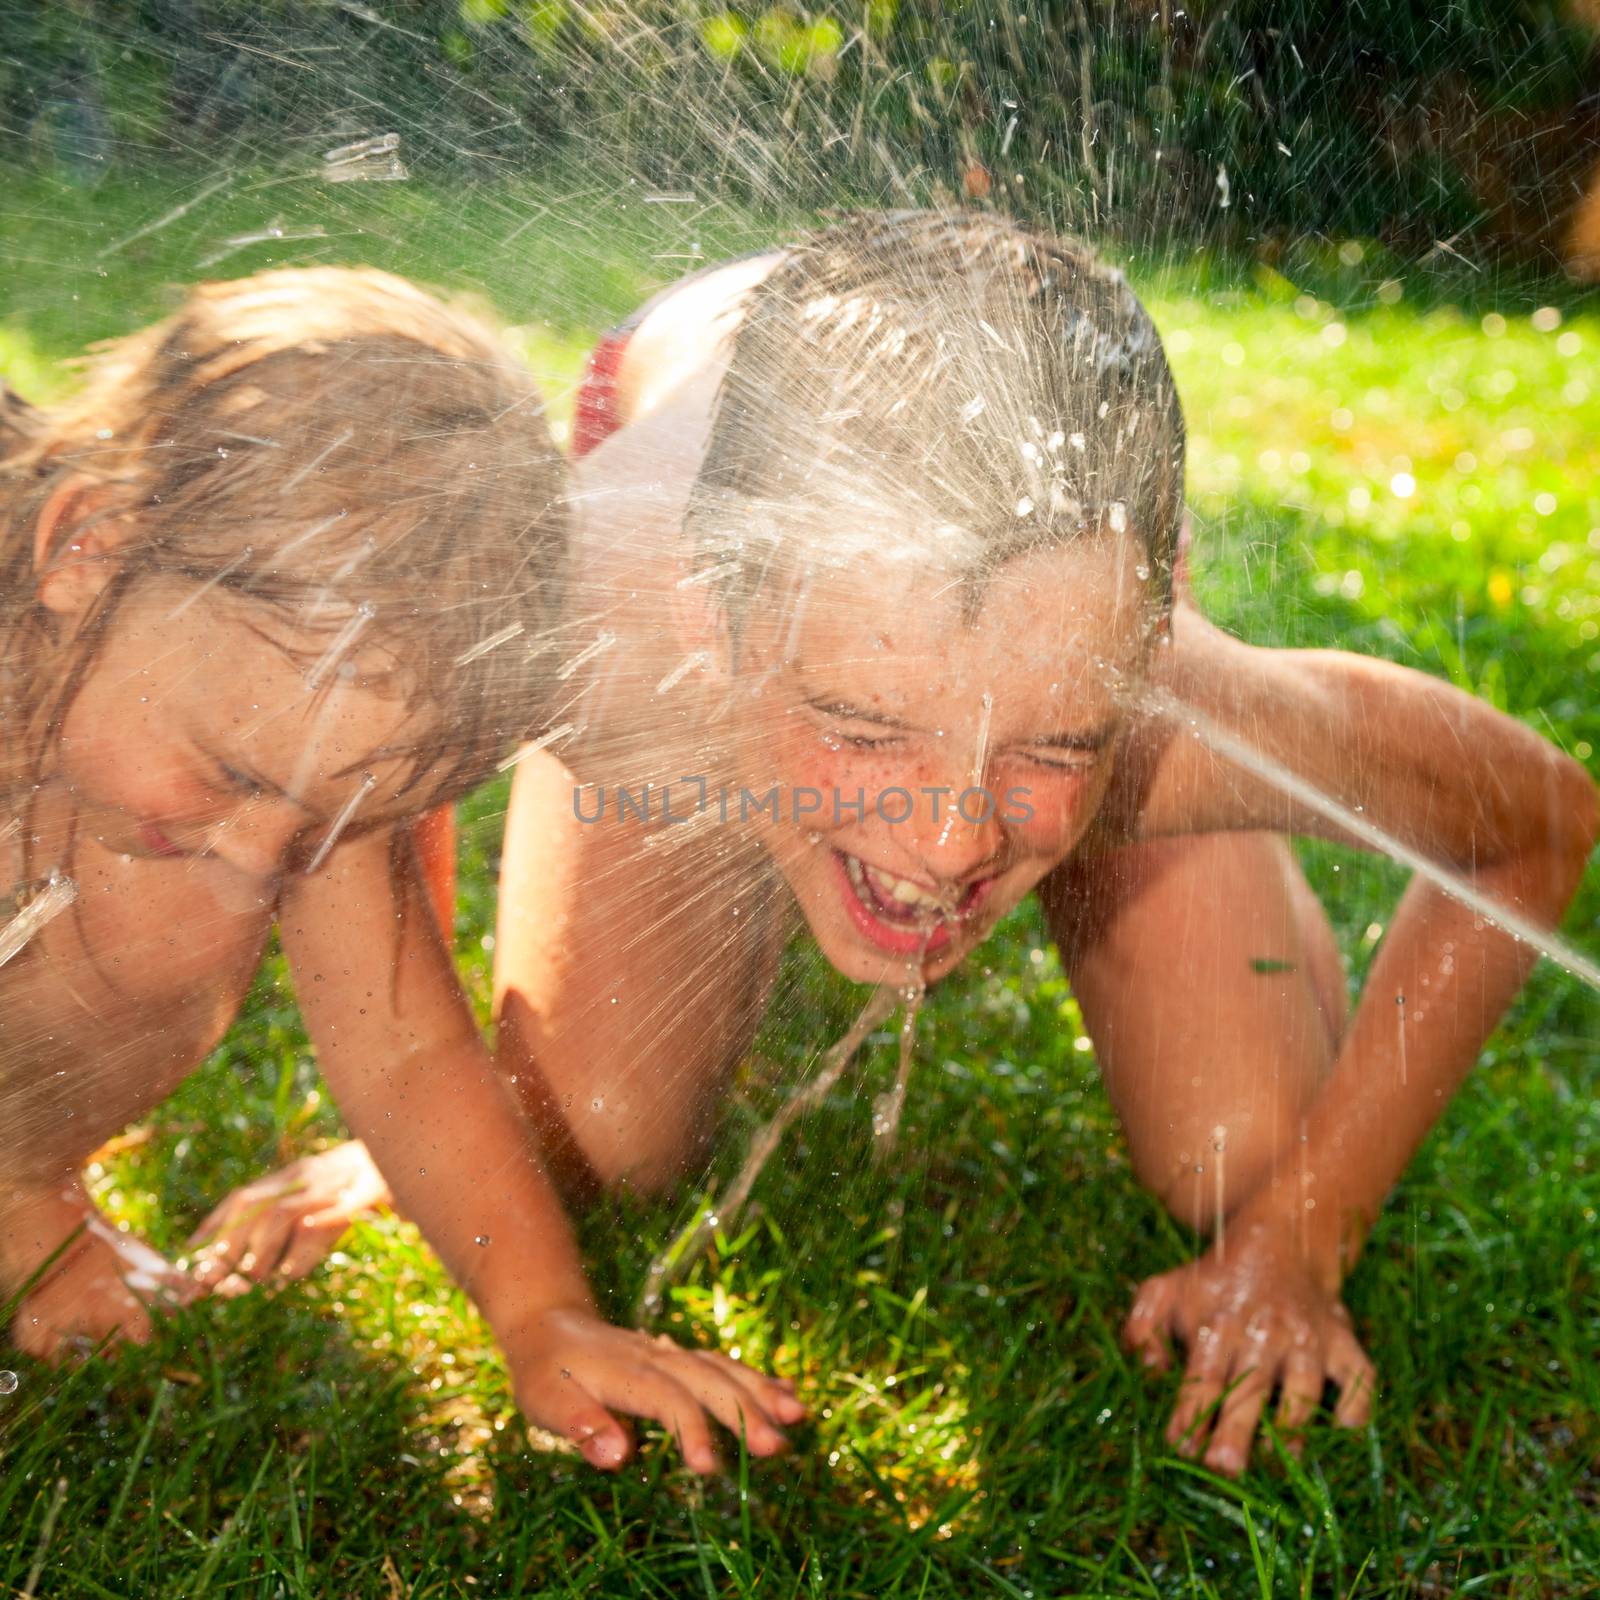 Children playing in a summer garden by naumoid